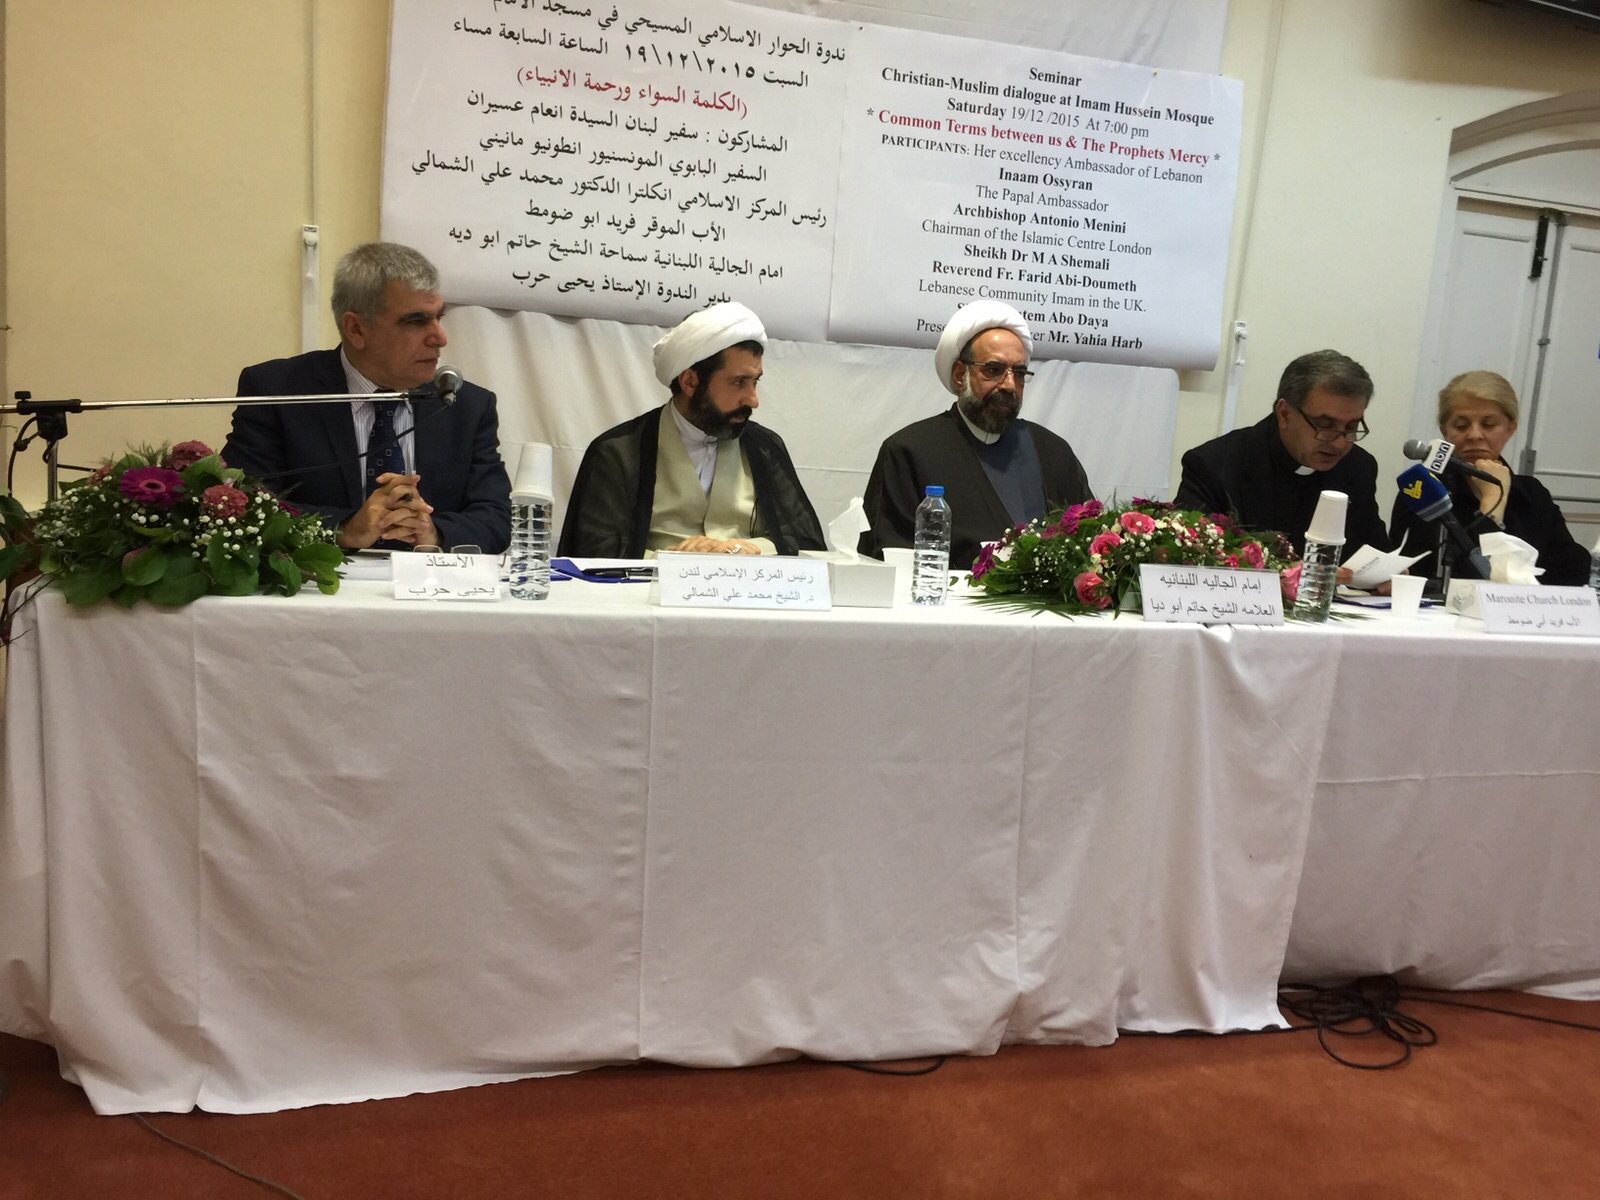 برگزاری همایش در دفاع از وحدت اسلامی، گفتگوی بین الادیان و مساله فلسطین 